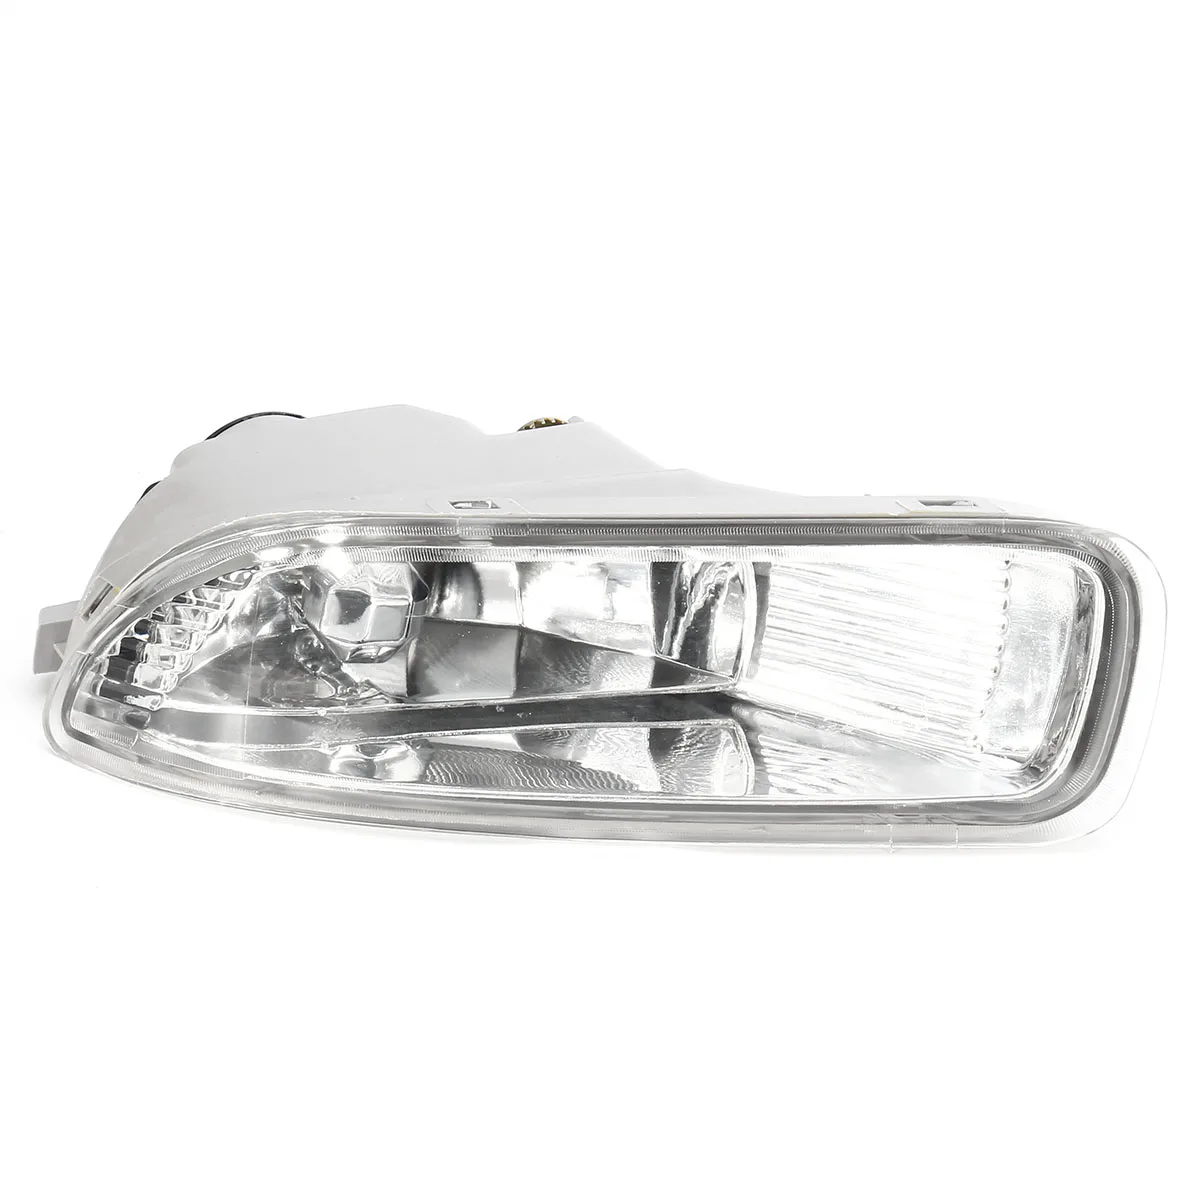 81200-02060 1 пара противотуманный светильник для Toyota Corolla 2003 2004 автомобильный бампер лампа прозрачные линзы с лампой высокая яркость Замена